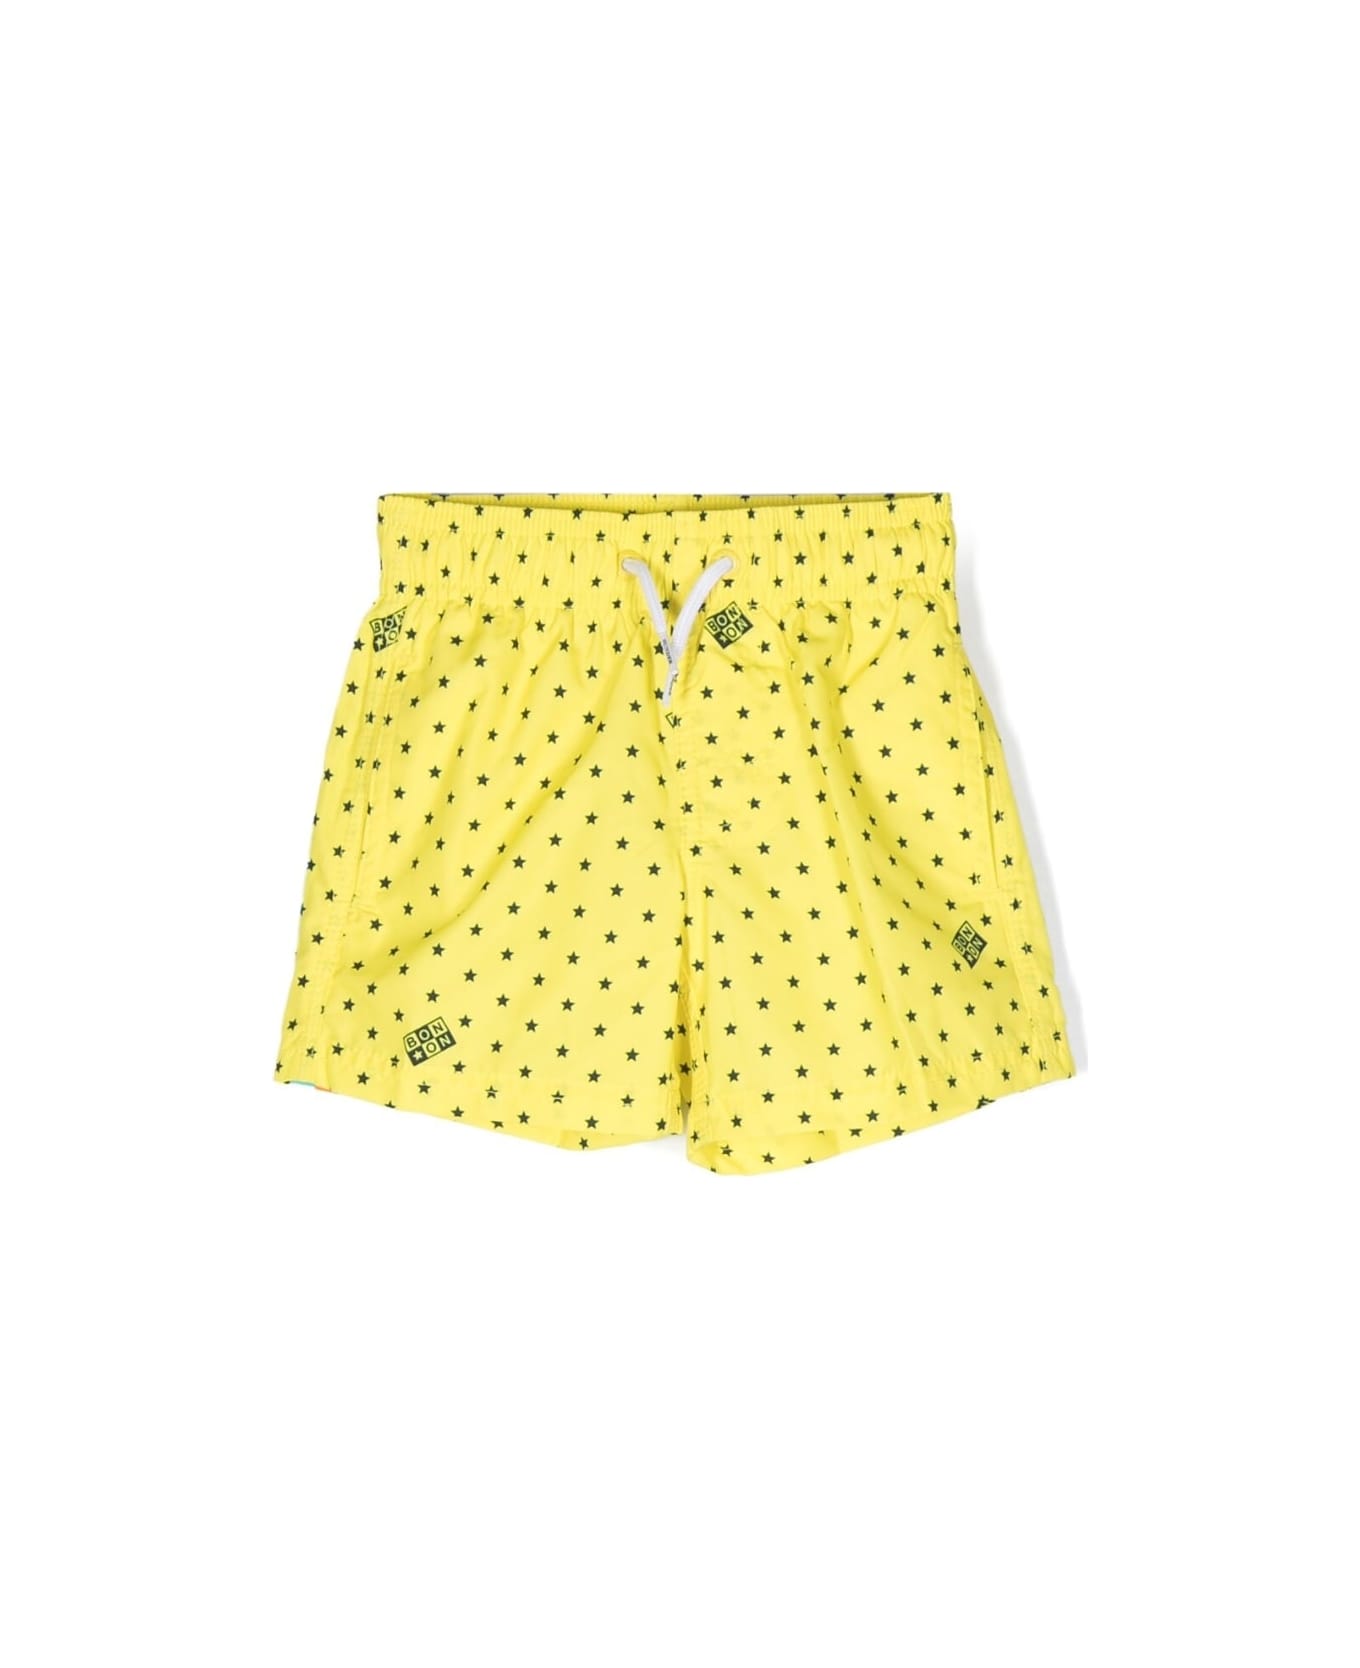 Bonton Swimsuit With Print - Yellow 水着